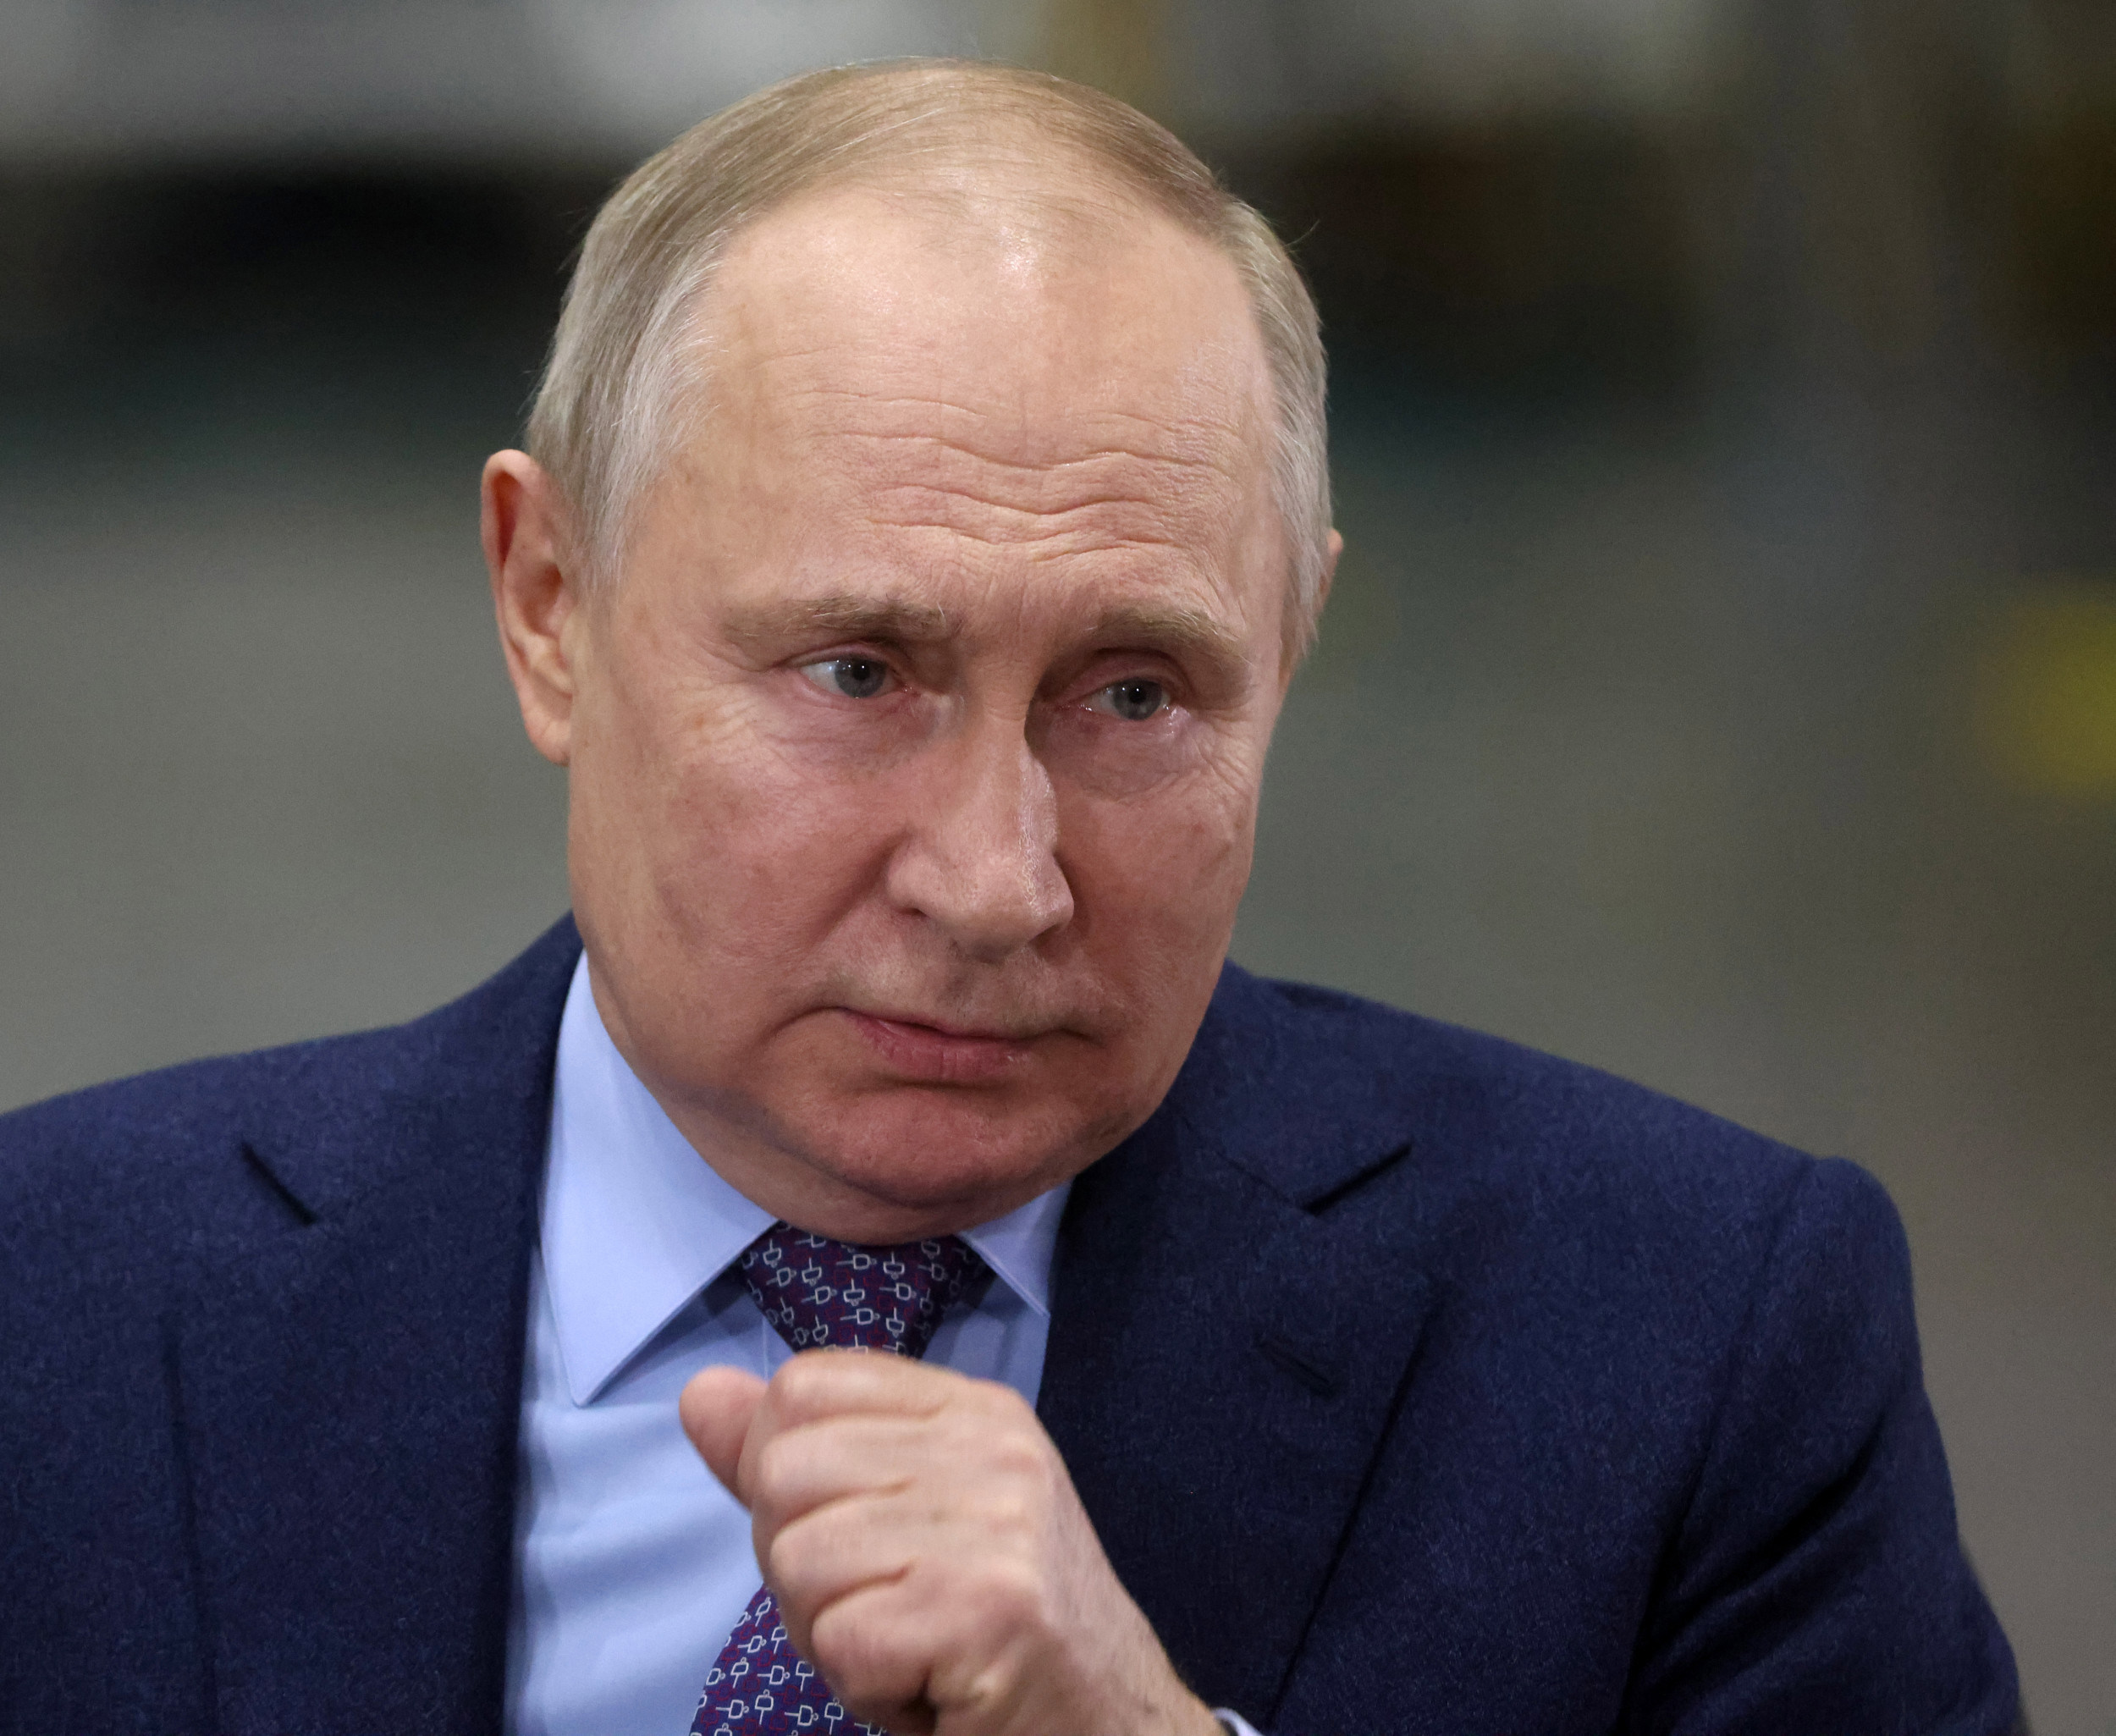 Putin Death Rumors Were Spread by Russian Officials: Ukraine Intel